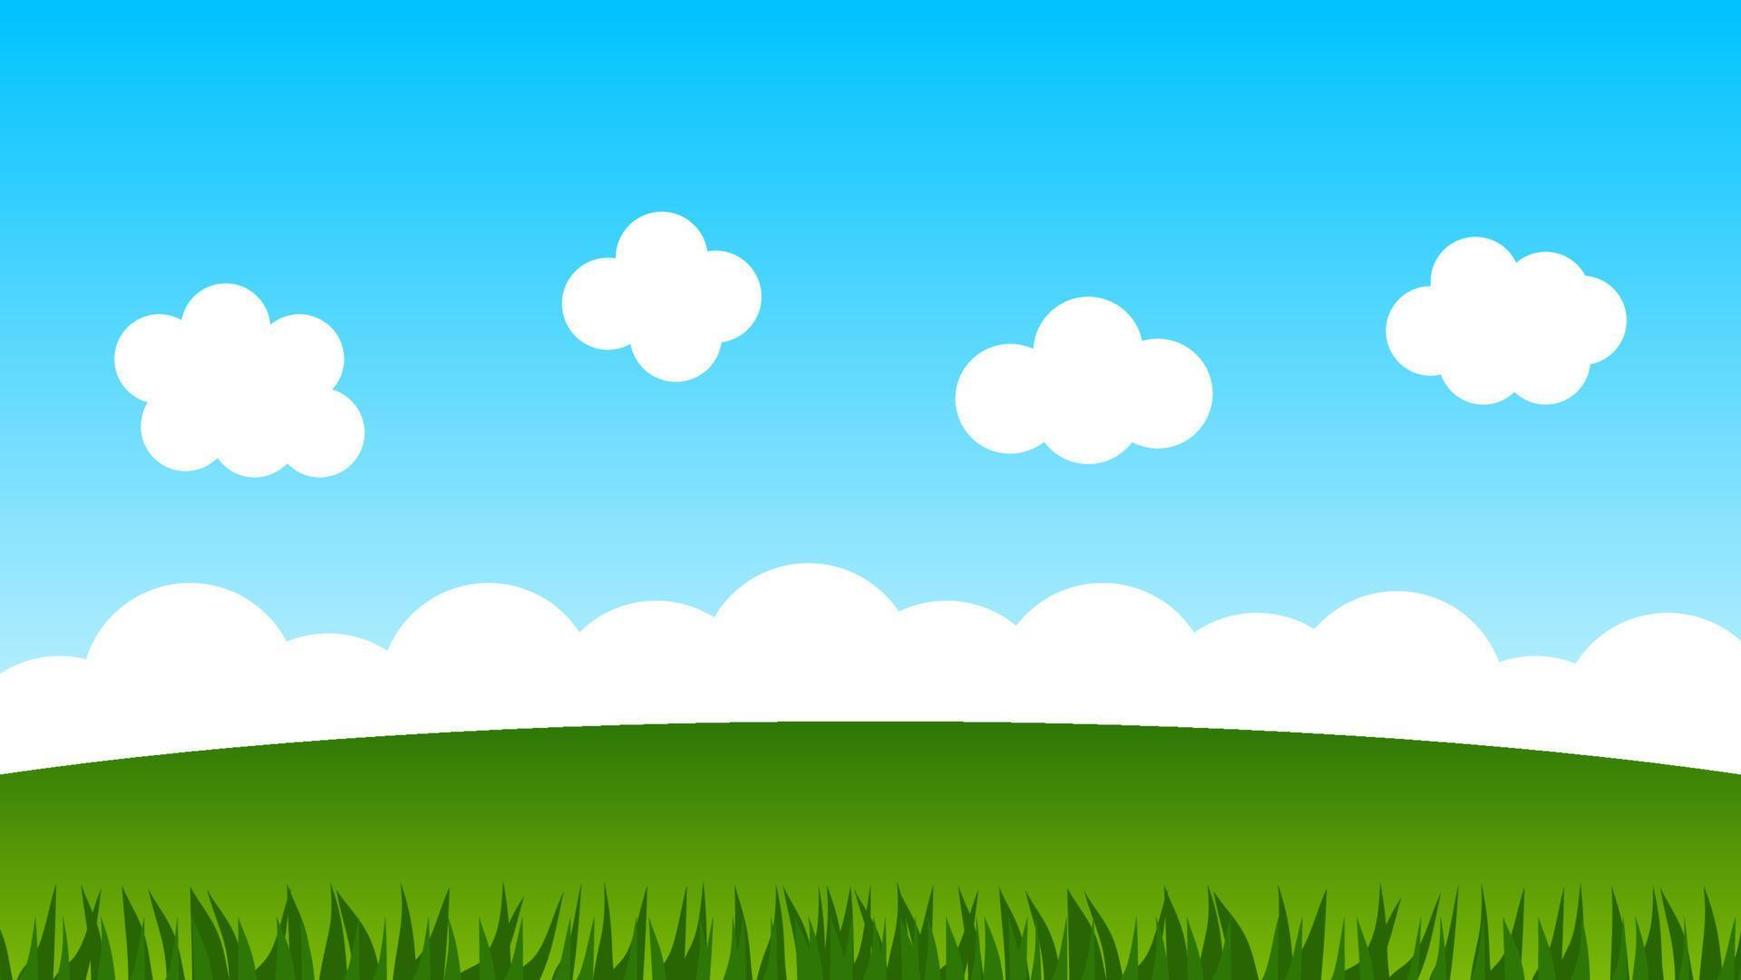 landschapsbeeldverhaalscène met groene heuvels en witte wolk in de zomer blauwe hemelachtergrond vector